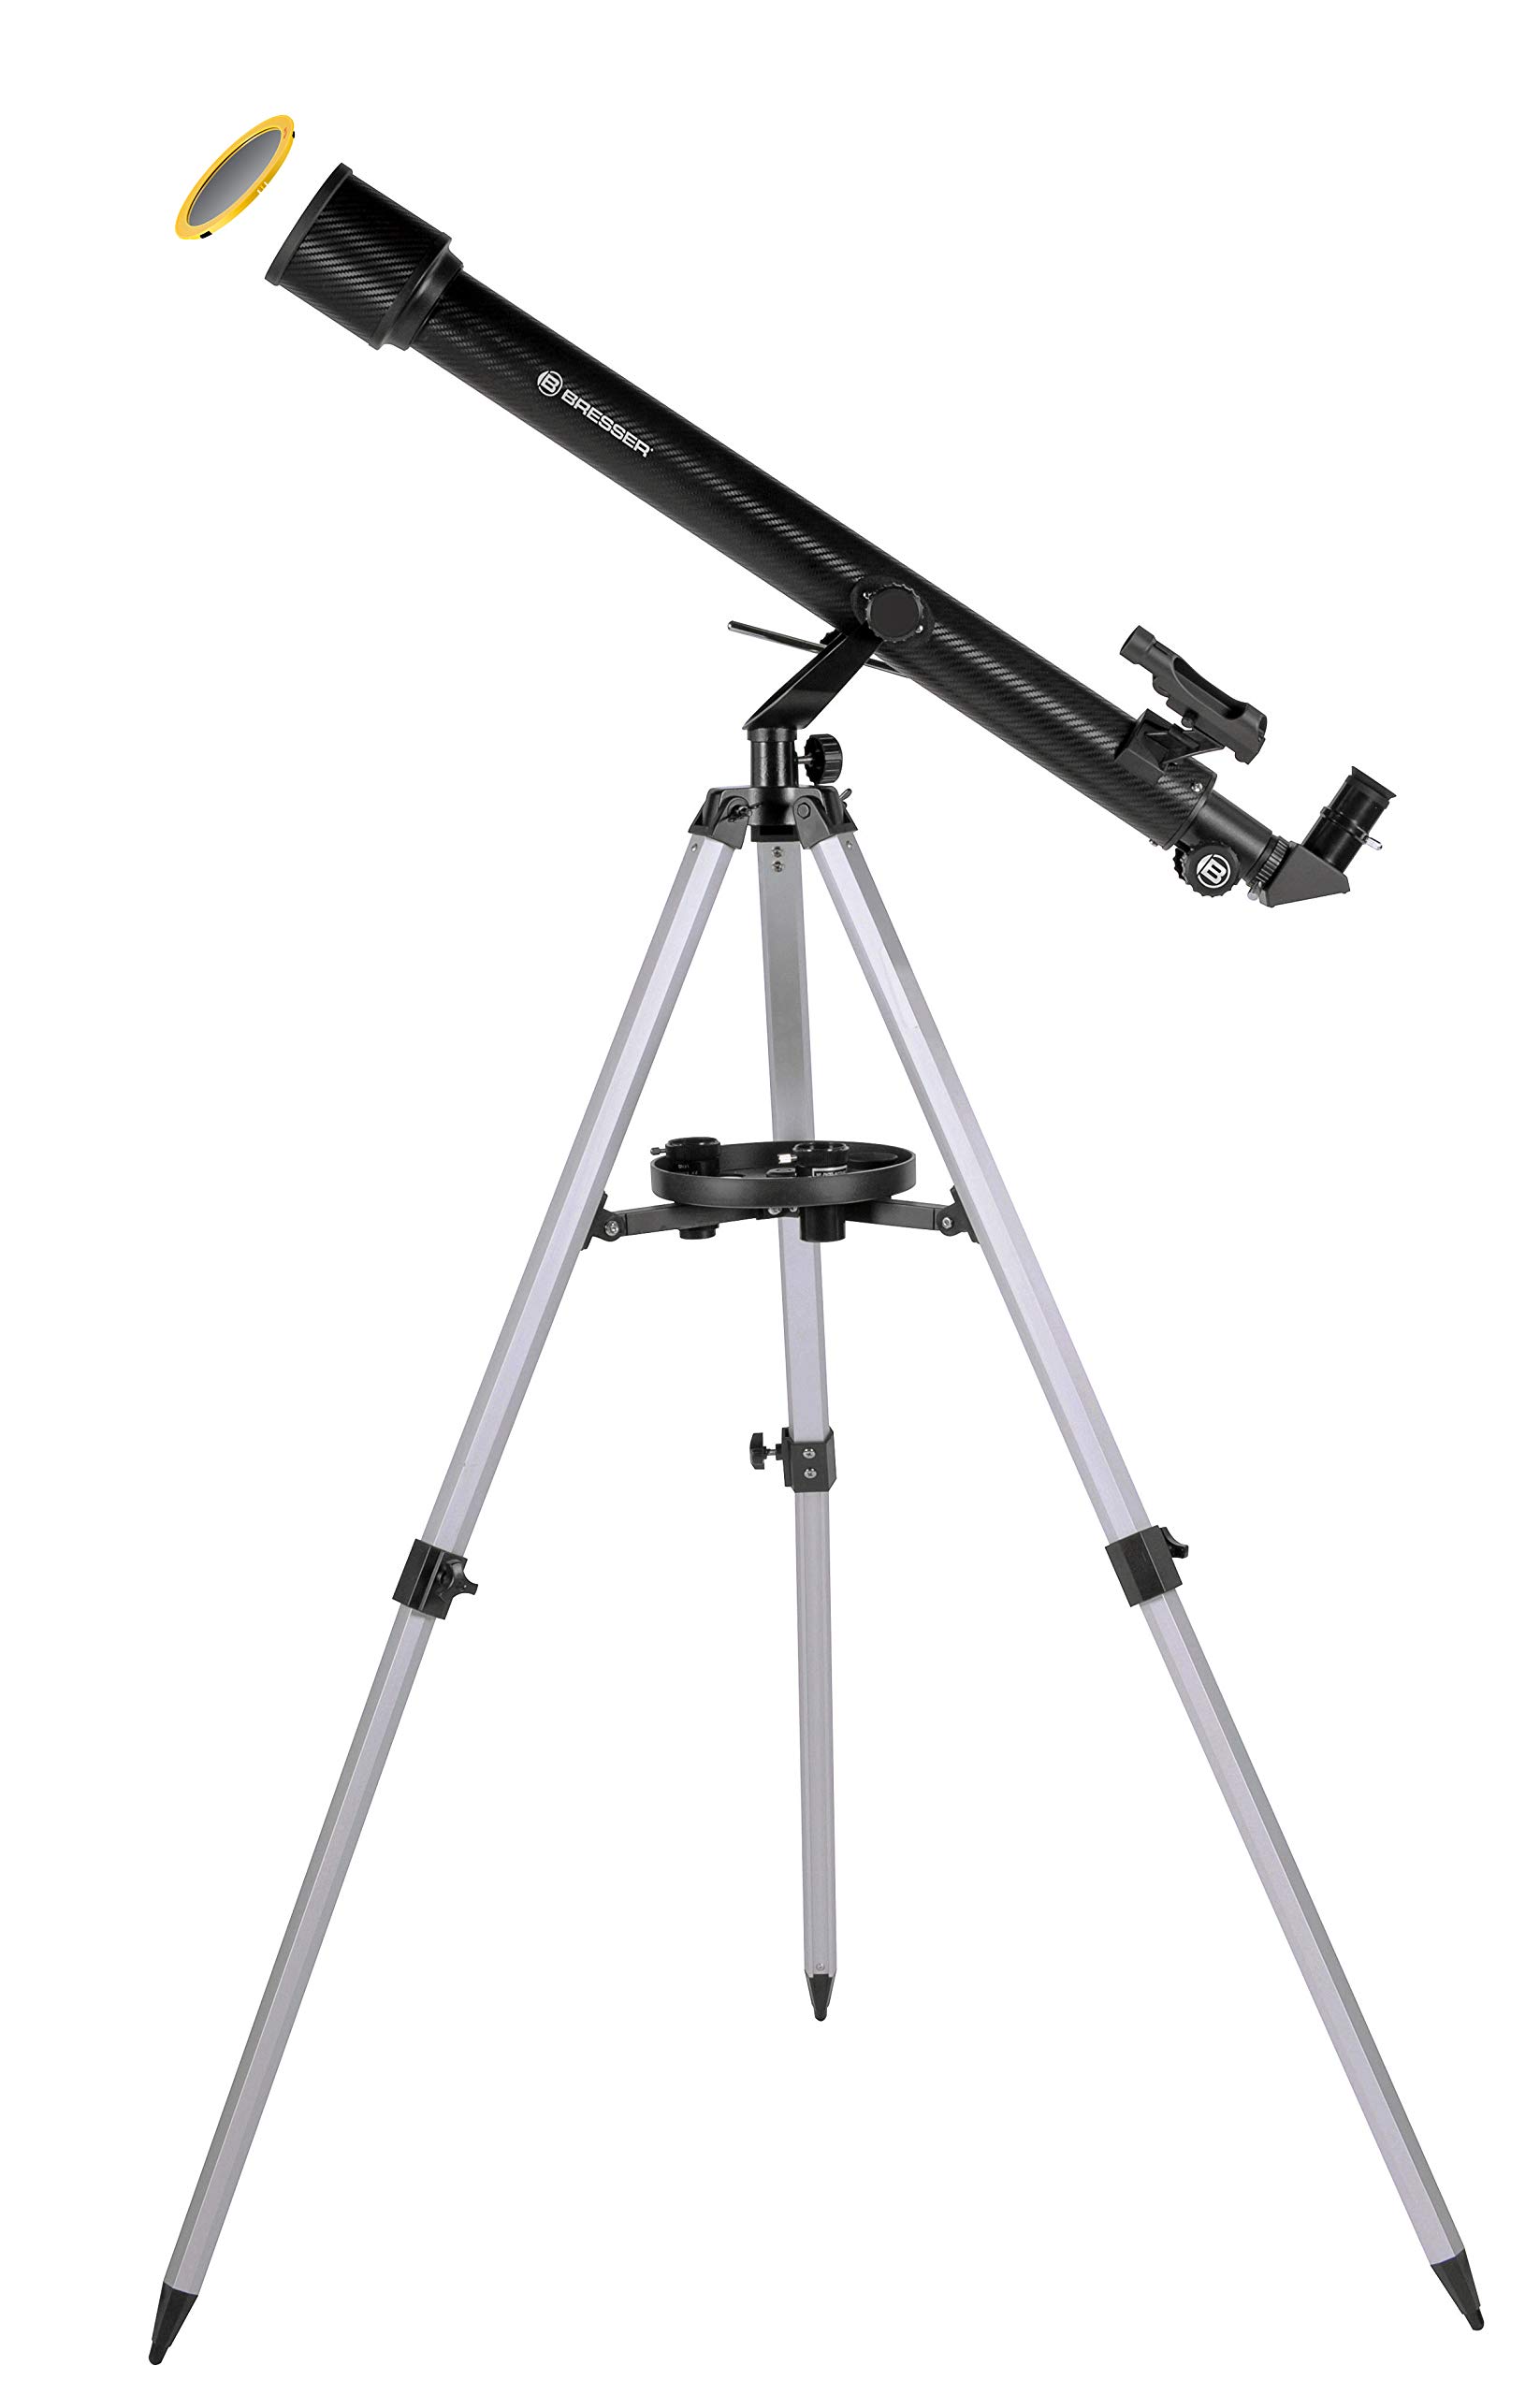 Bresser Refraktor Einsteiger Teleskop Stellar 60/800 mit Smartphone Kamera Adapter und hochwertigem Objektiv-Sonnenfilter, inklusive Stativ und umfangreichem Zubehör